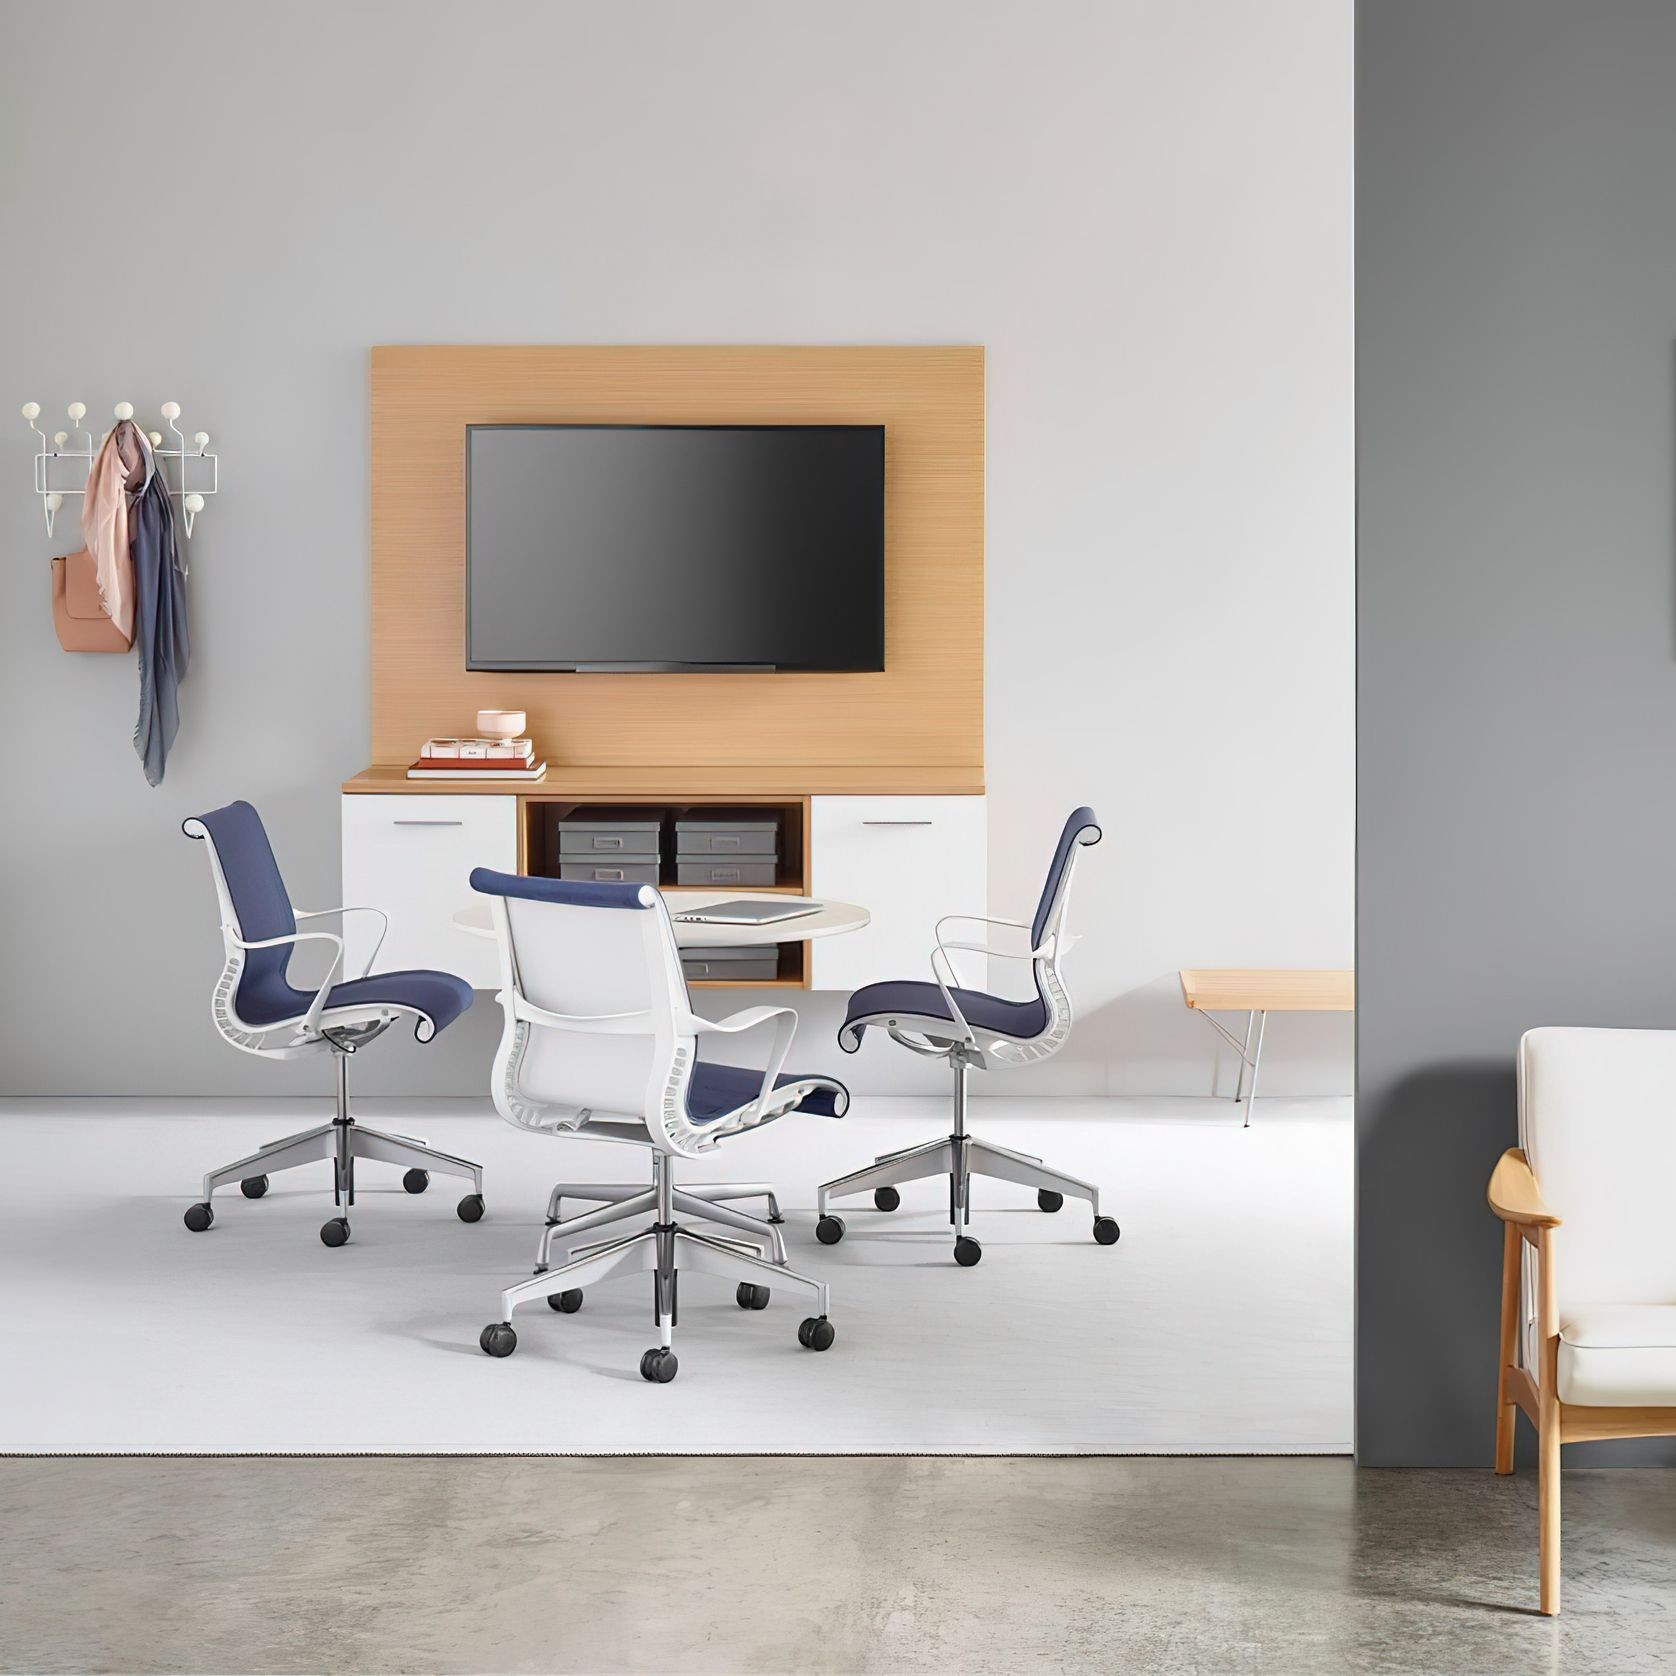 Setu Office Chair by Herman Miller gallery detail image